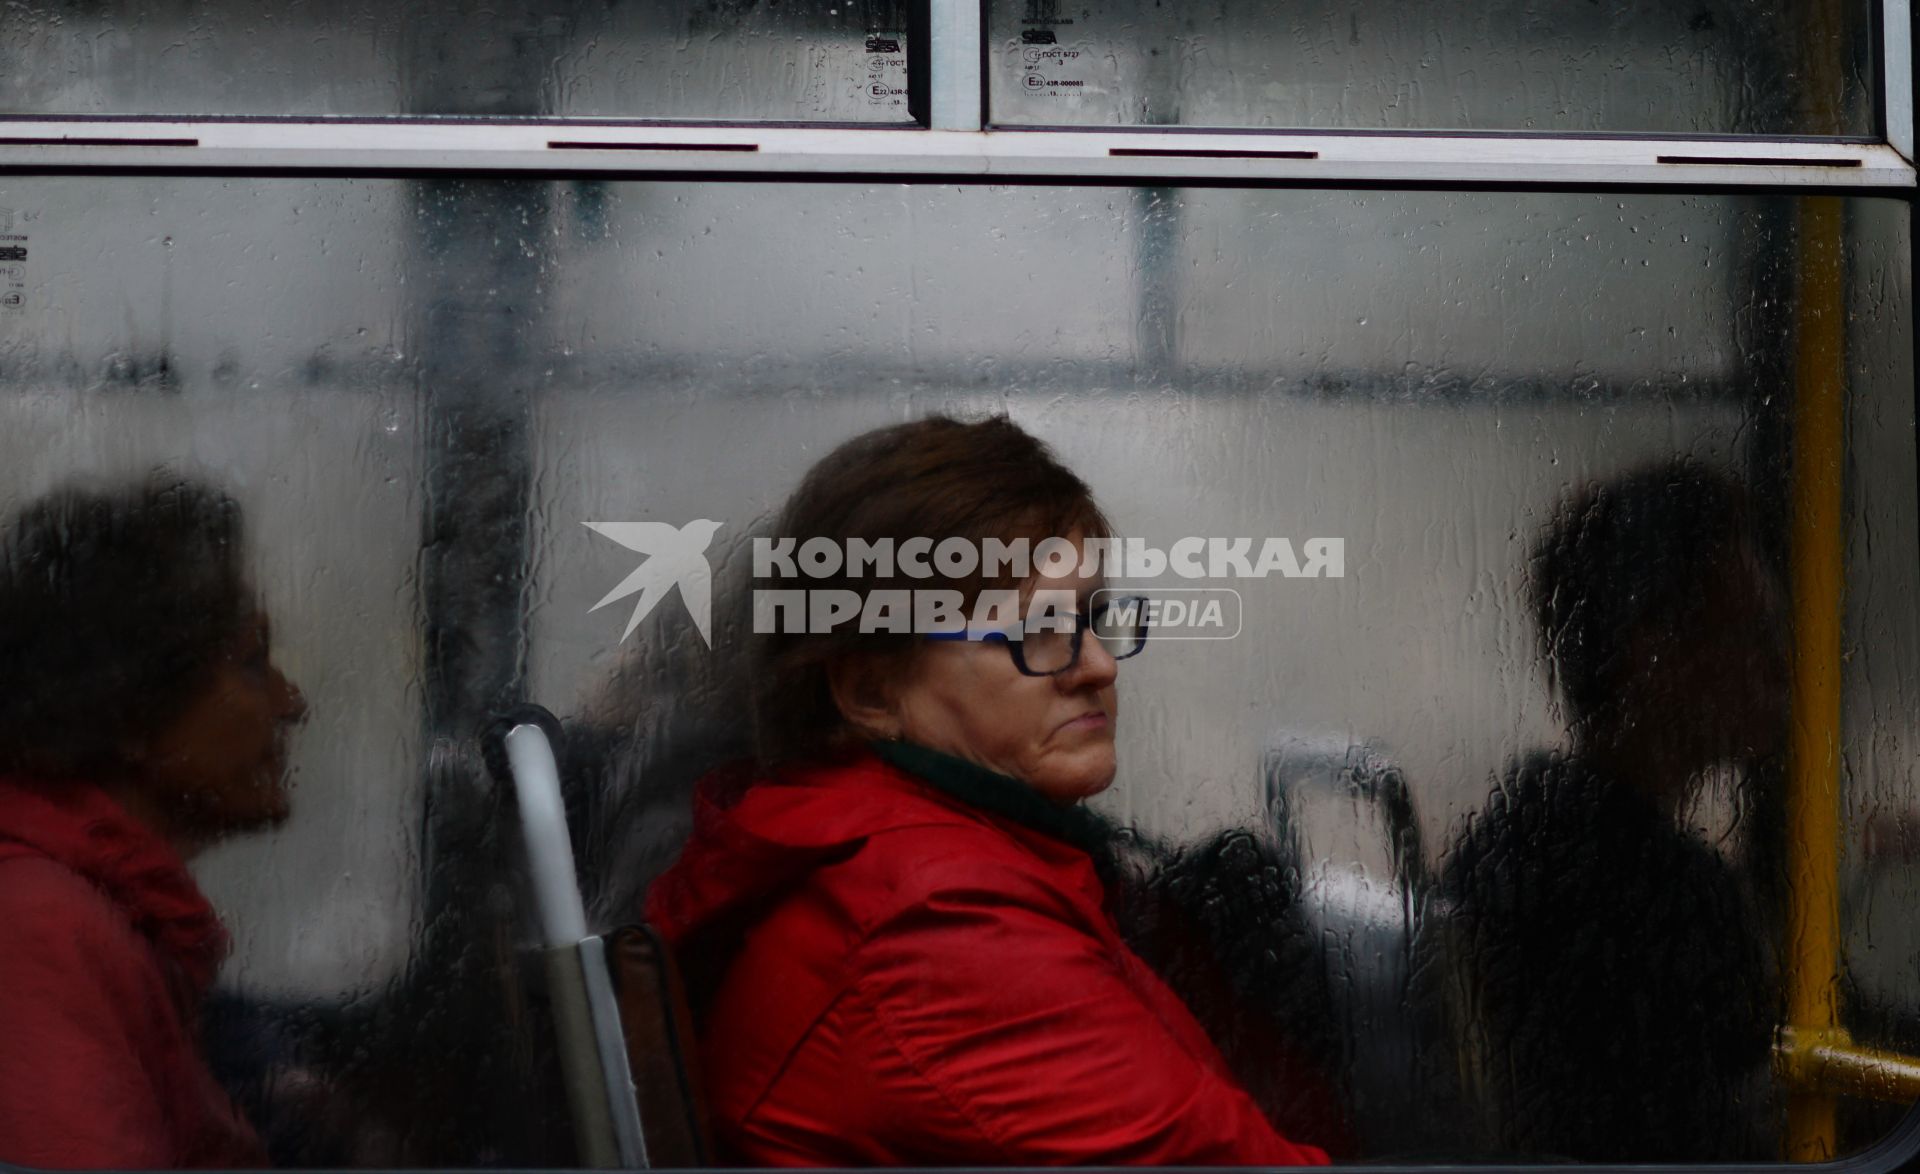 Оренбург. Женщина в автобусе.